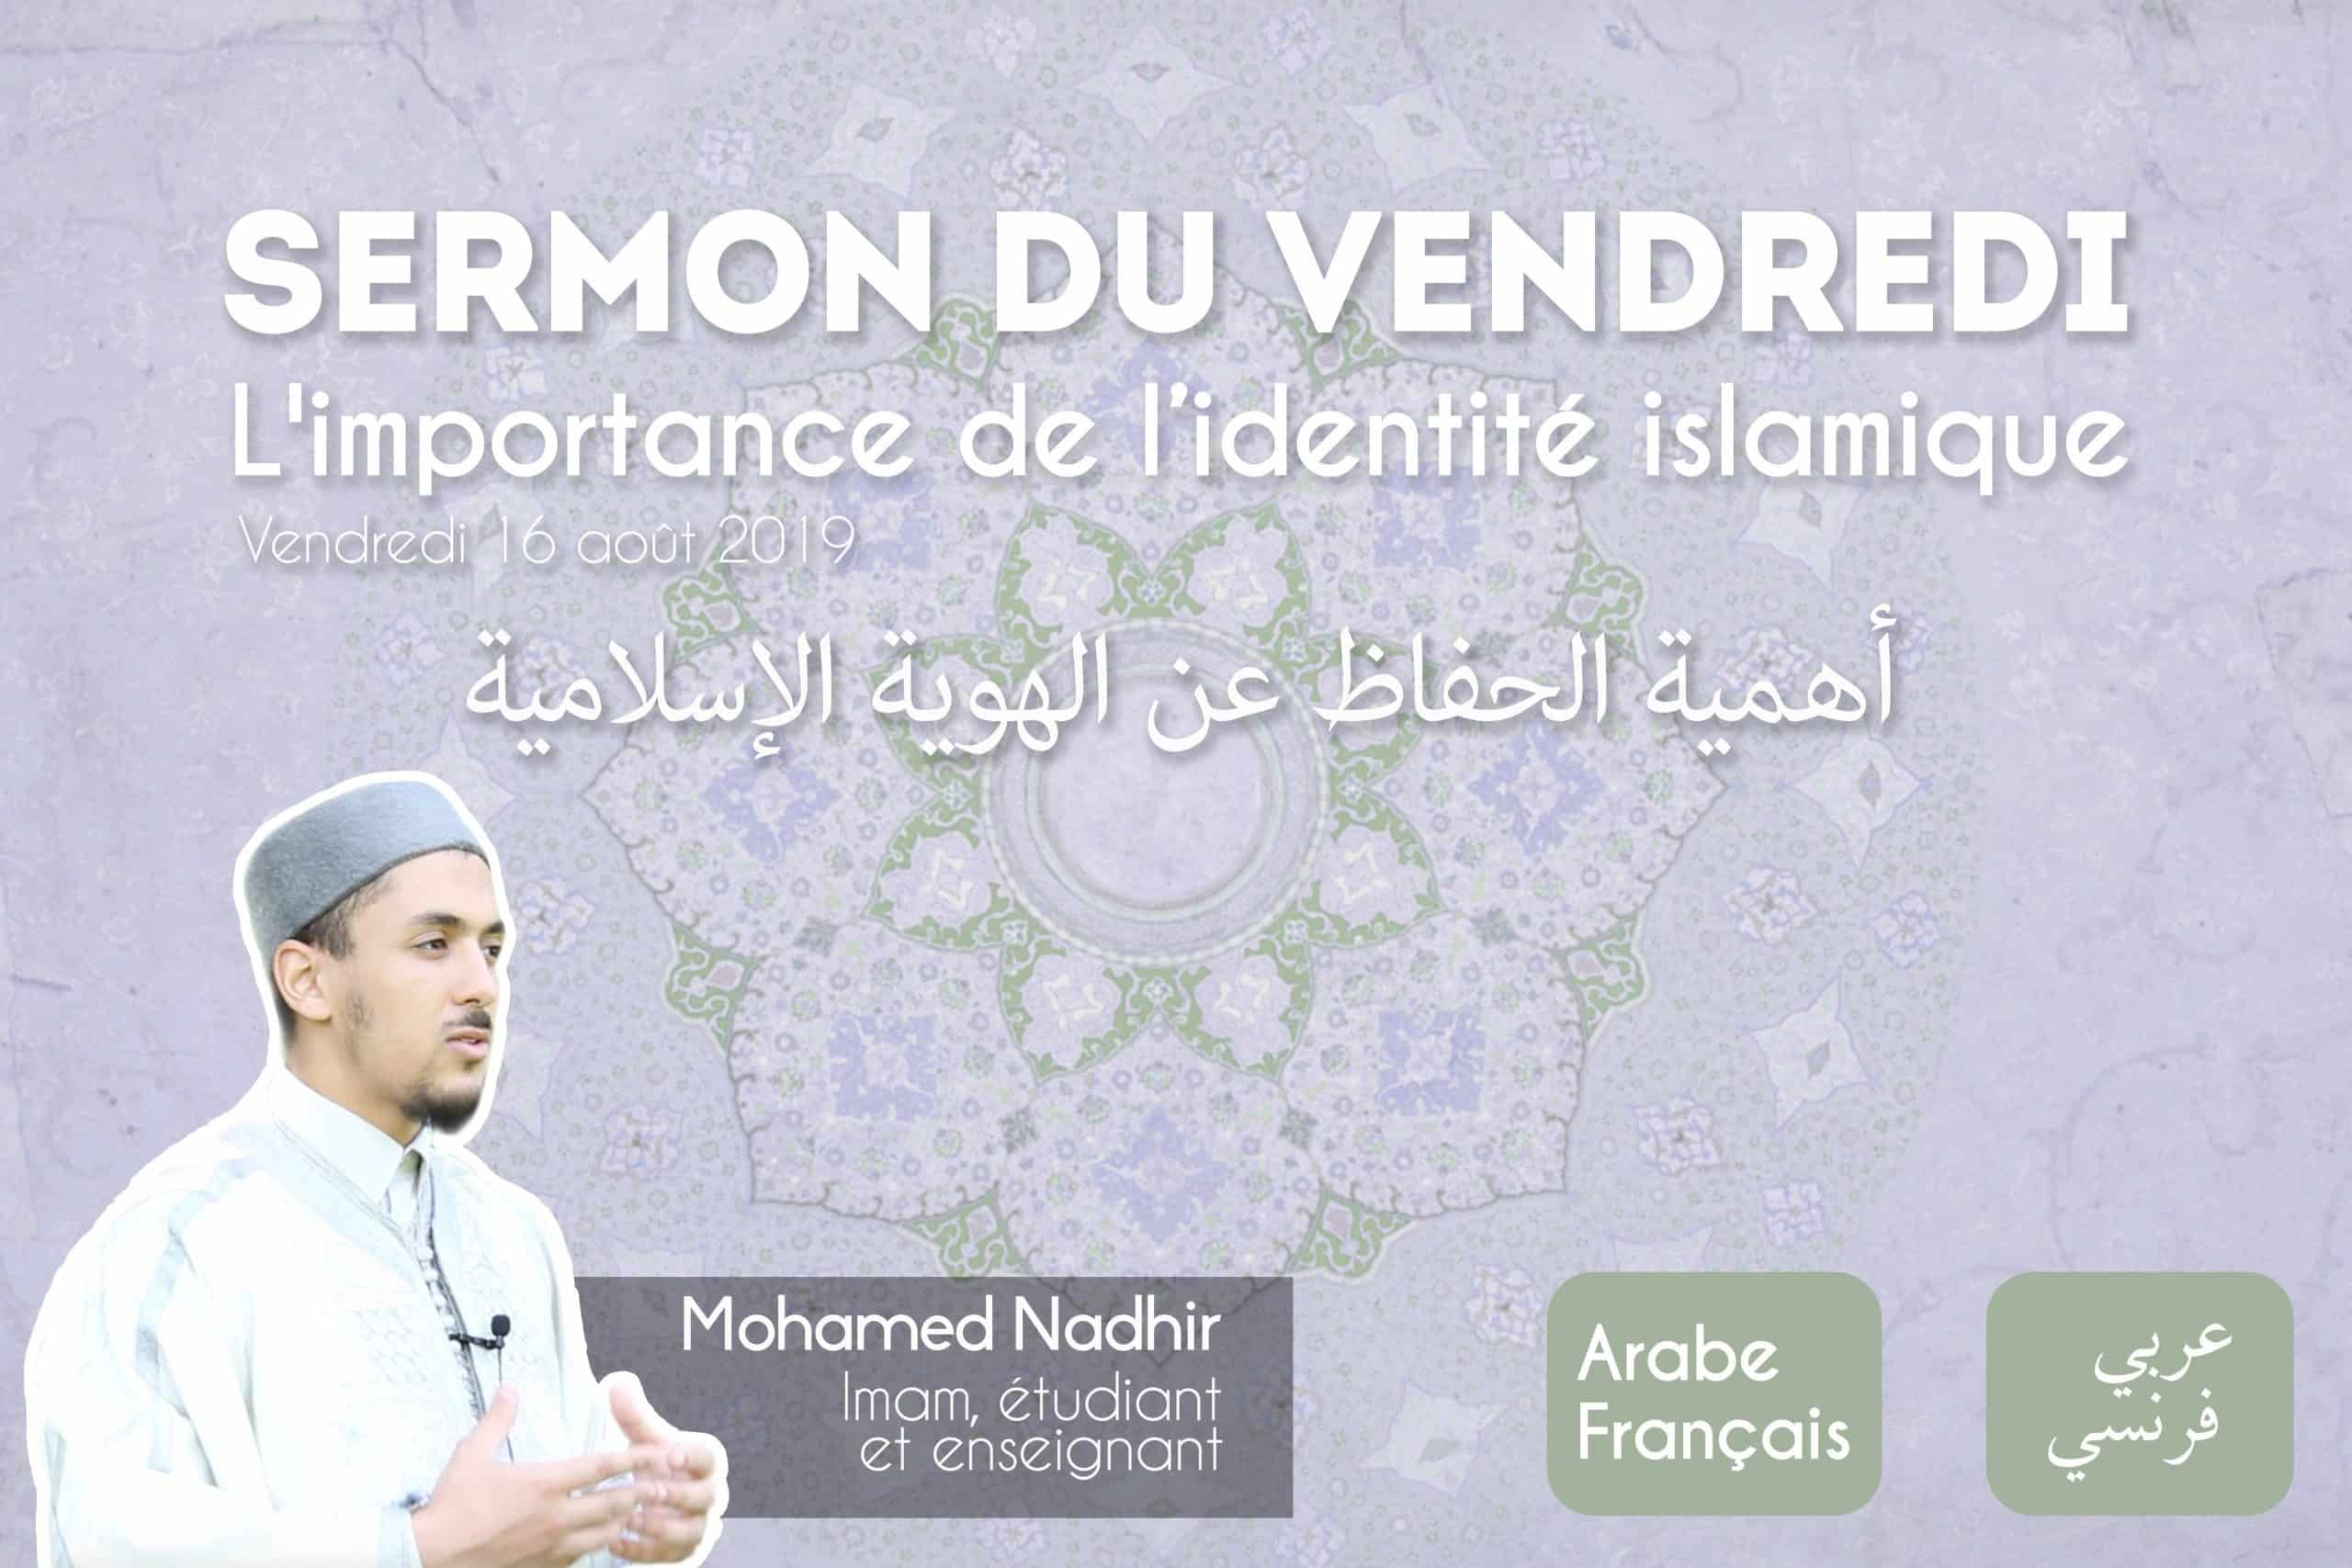 Sermon du vendrediL'importance de l'identité islamique (Mohamed Nadhir)